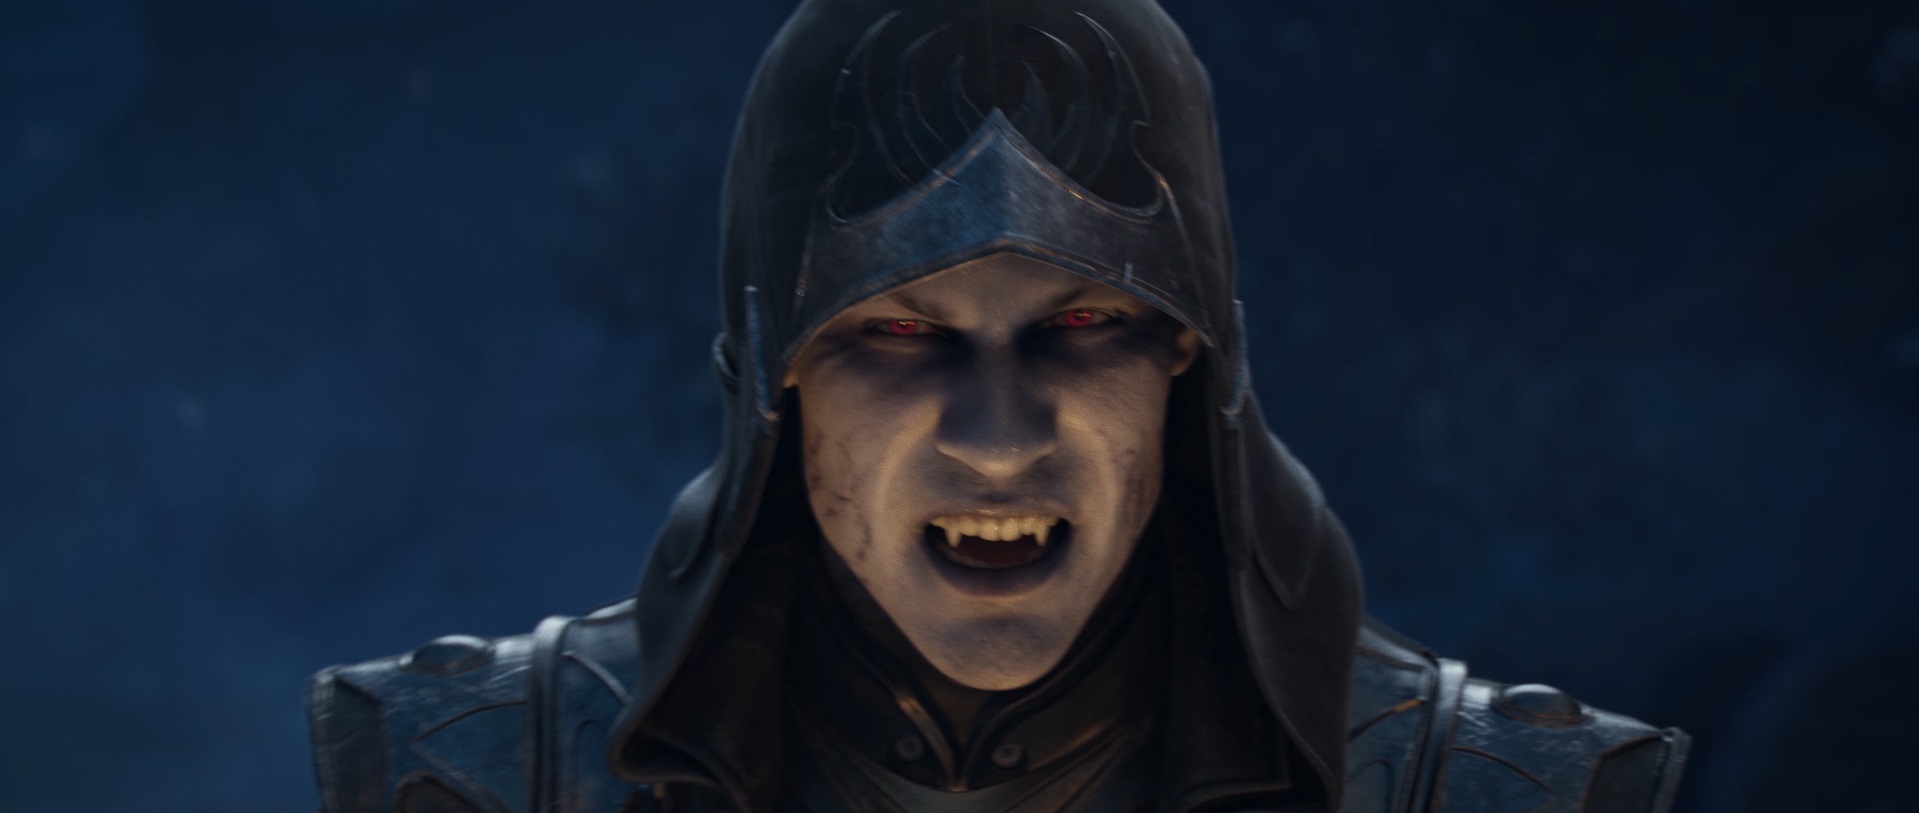 skyrim-has-a-vampire-problem-in-the-elder-scrolls-online-s-next-year-of-updates-pc-gamer